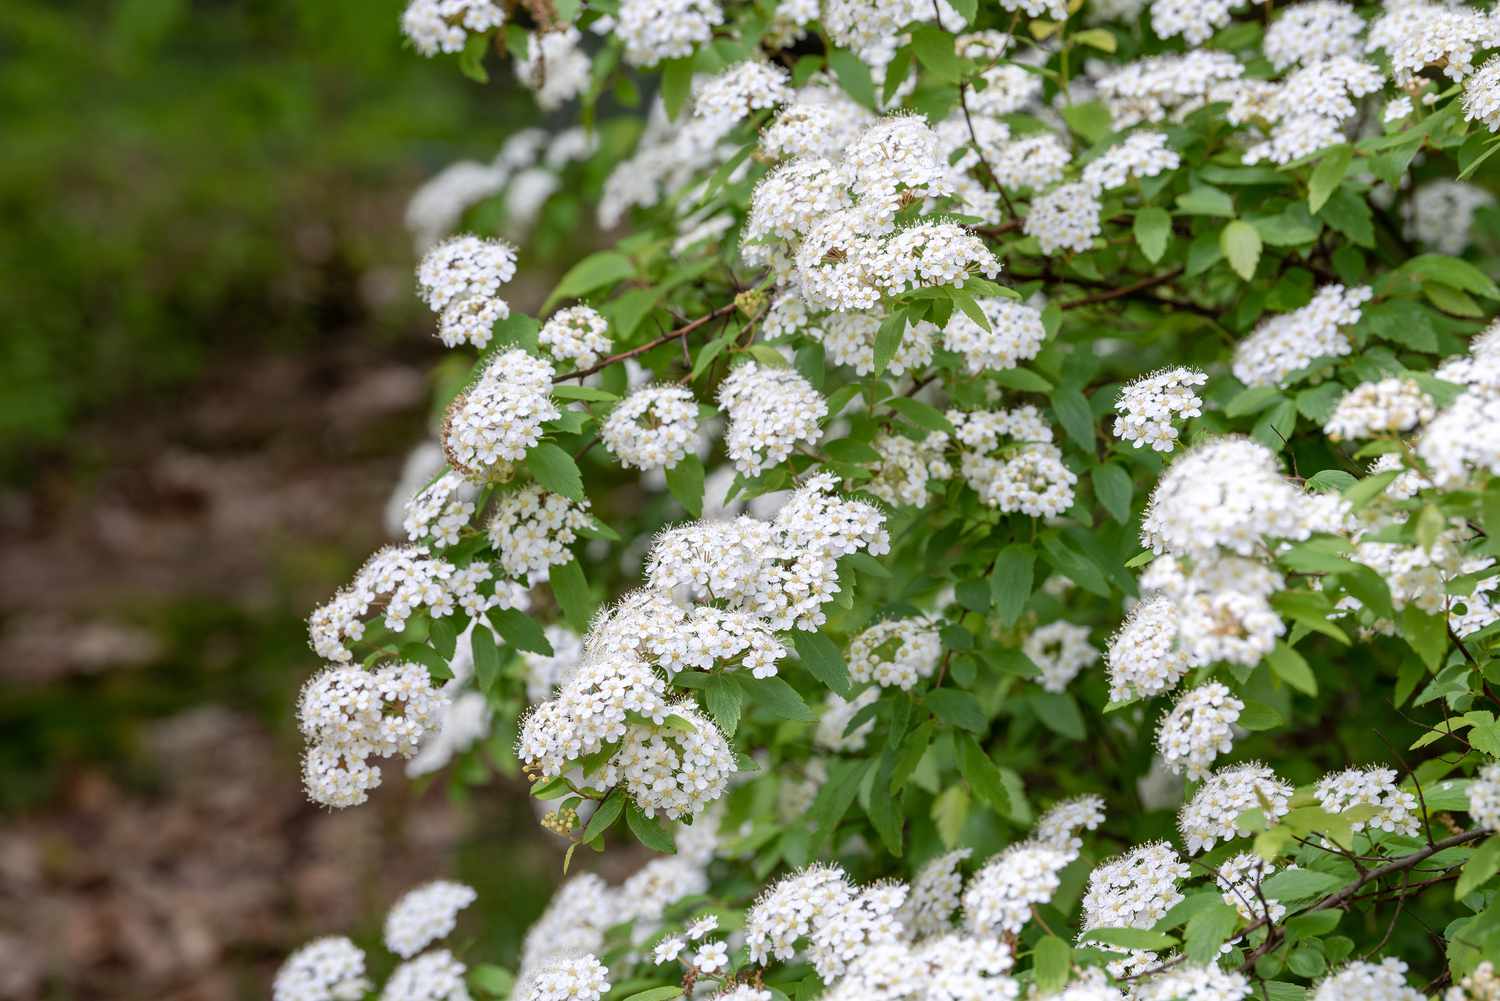 Planta de Spirea con racimos de flores blancas en las ramas